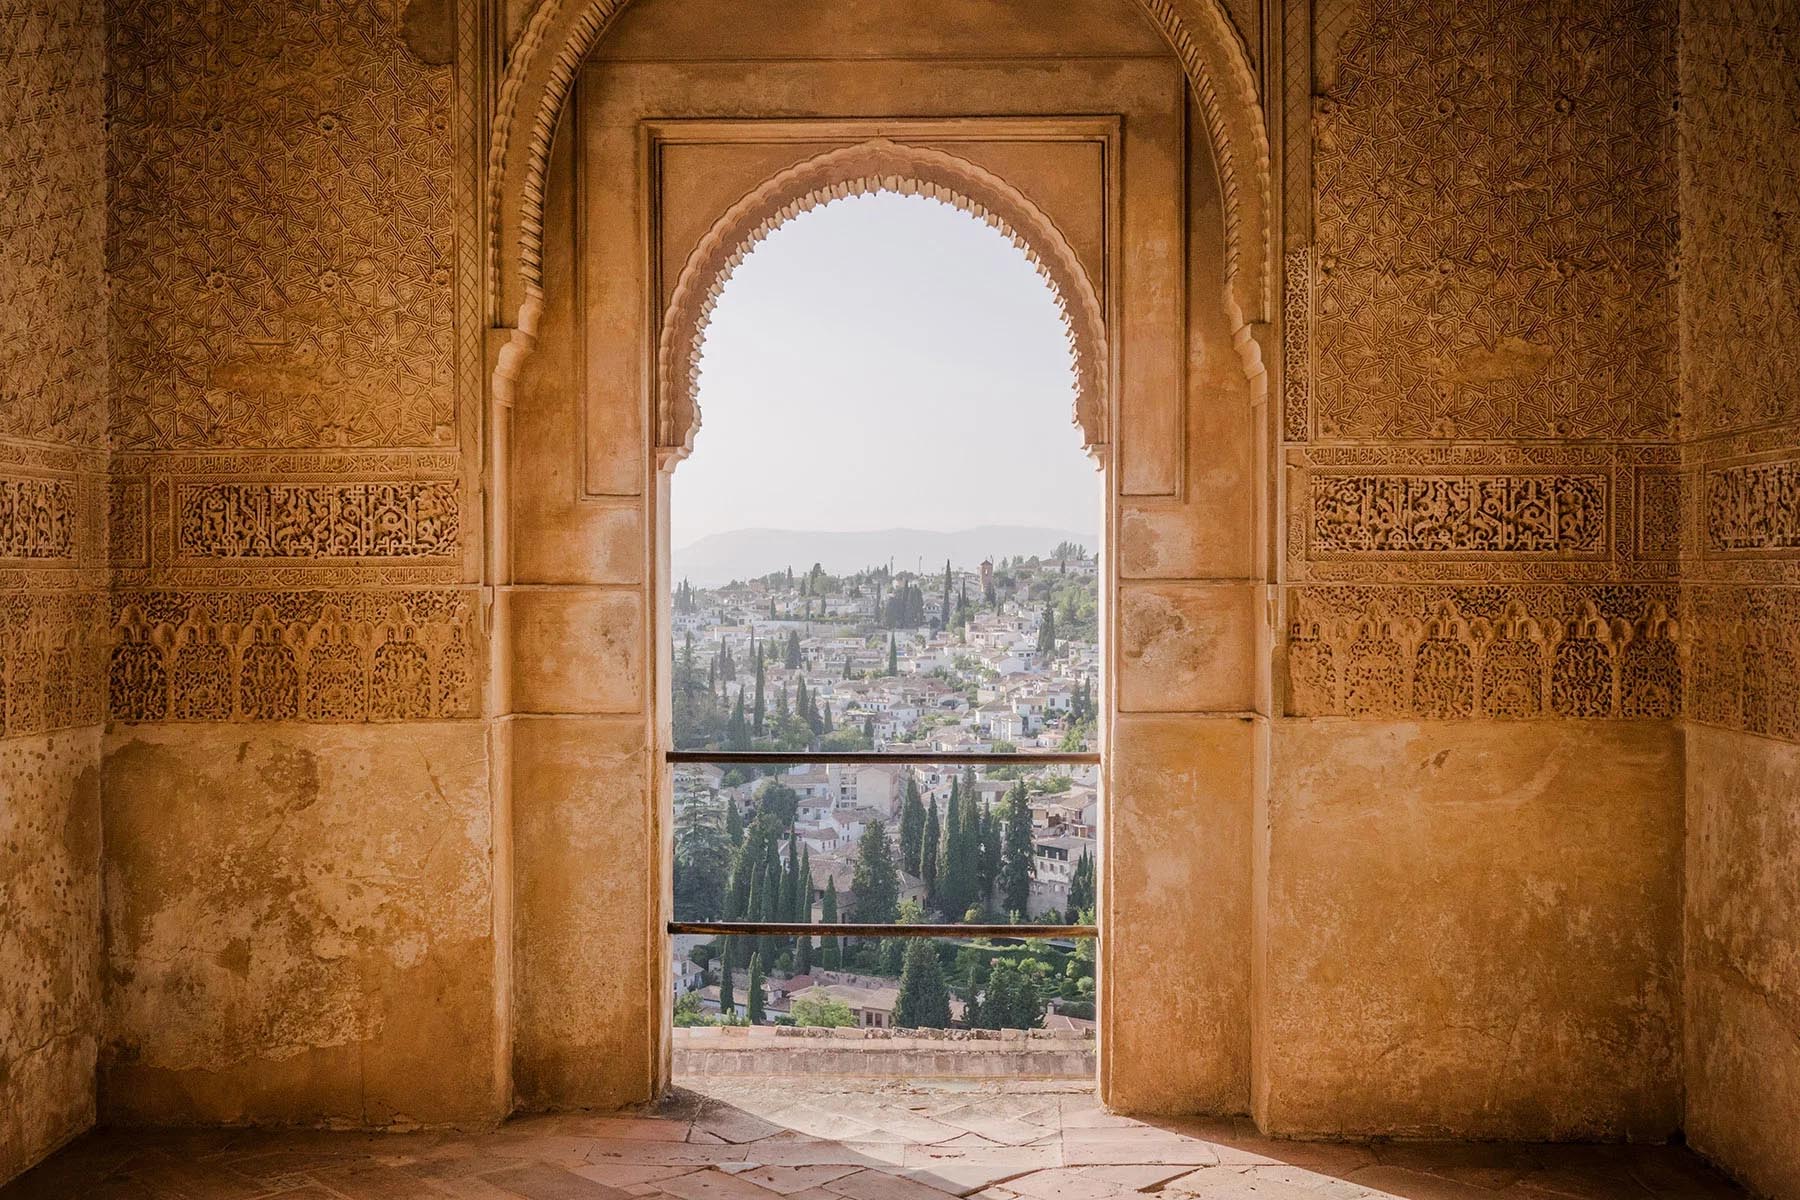 Ancient doorway overlooks Alhambra in Spain.